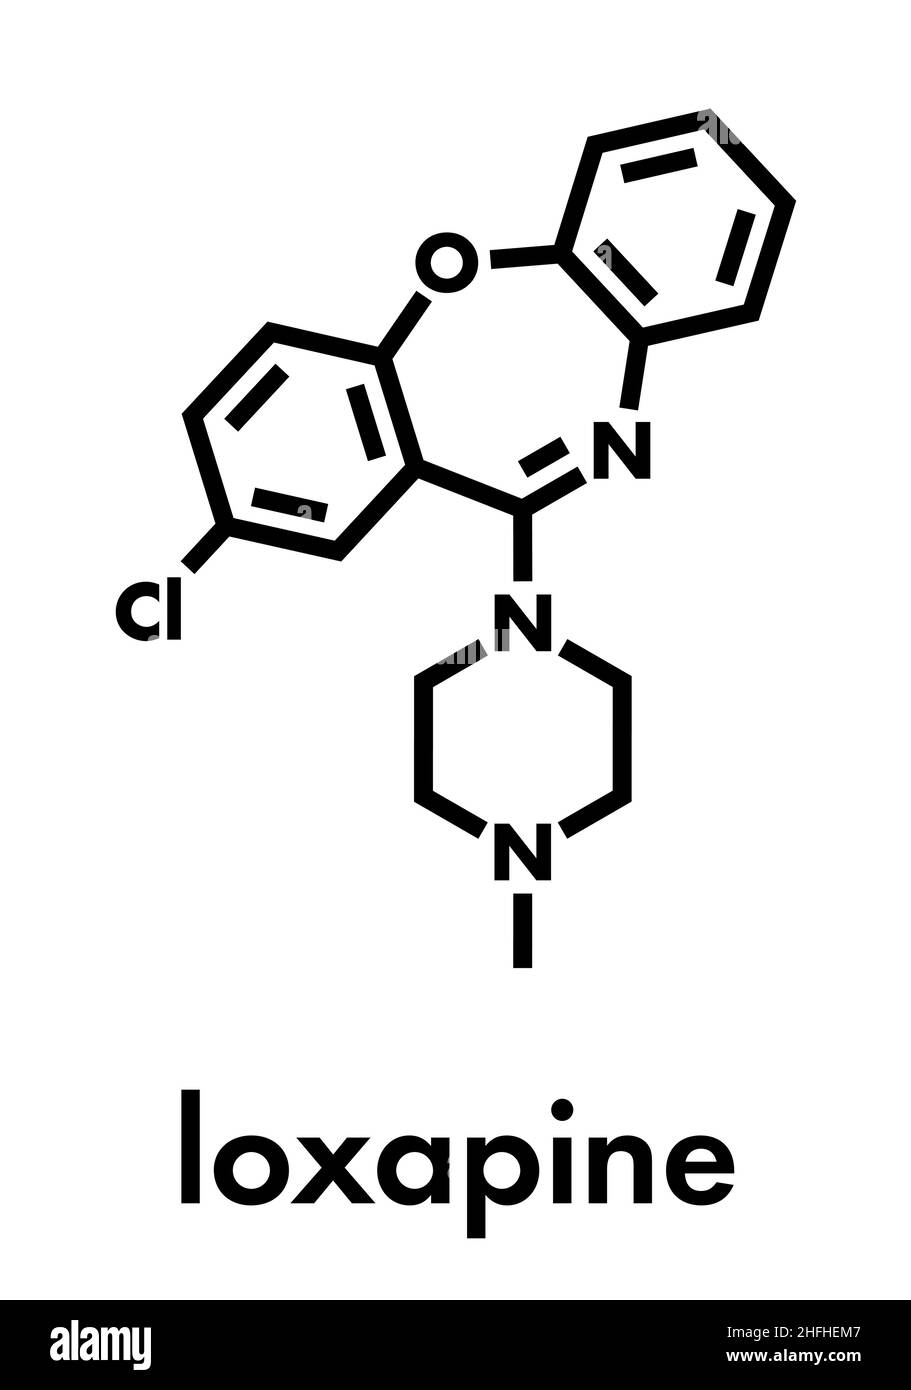 Loxapin antipsychotisches Drogenmolekül; wird zur Behandlung von Schizophrenie verwendet. Skelettformel. Stock Vektor